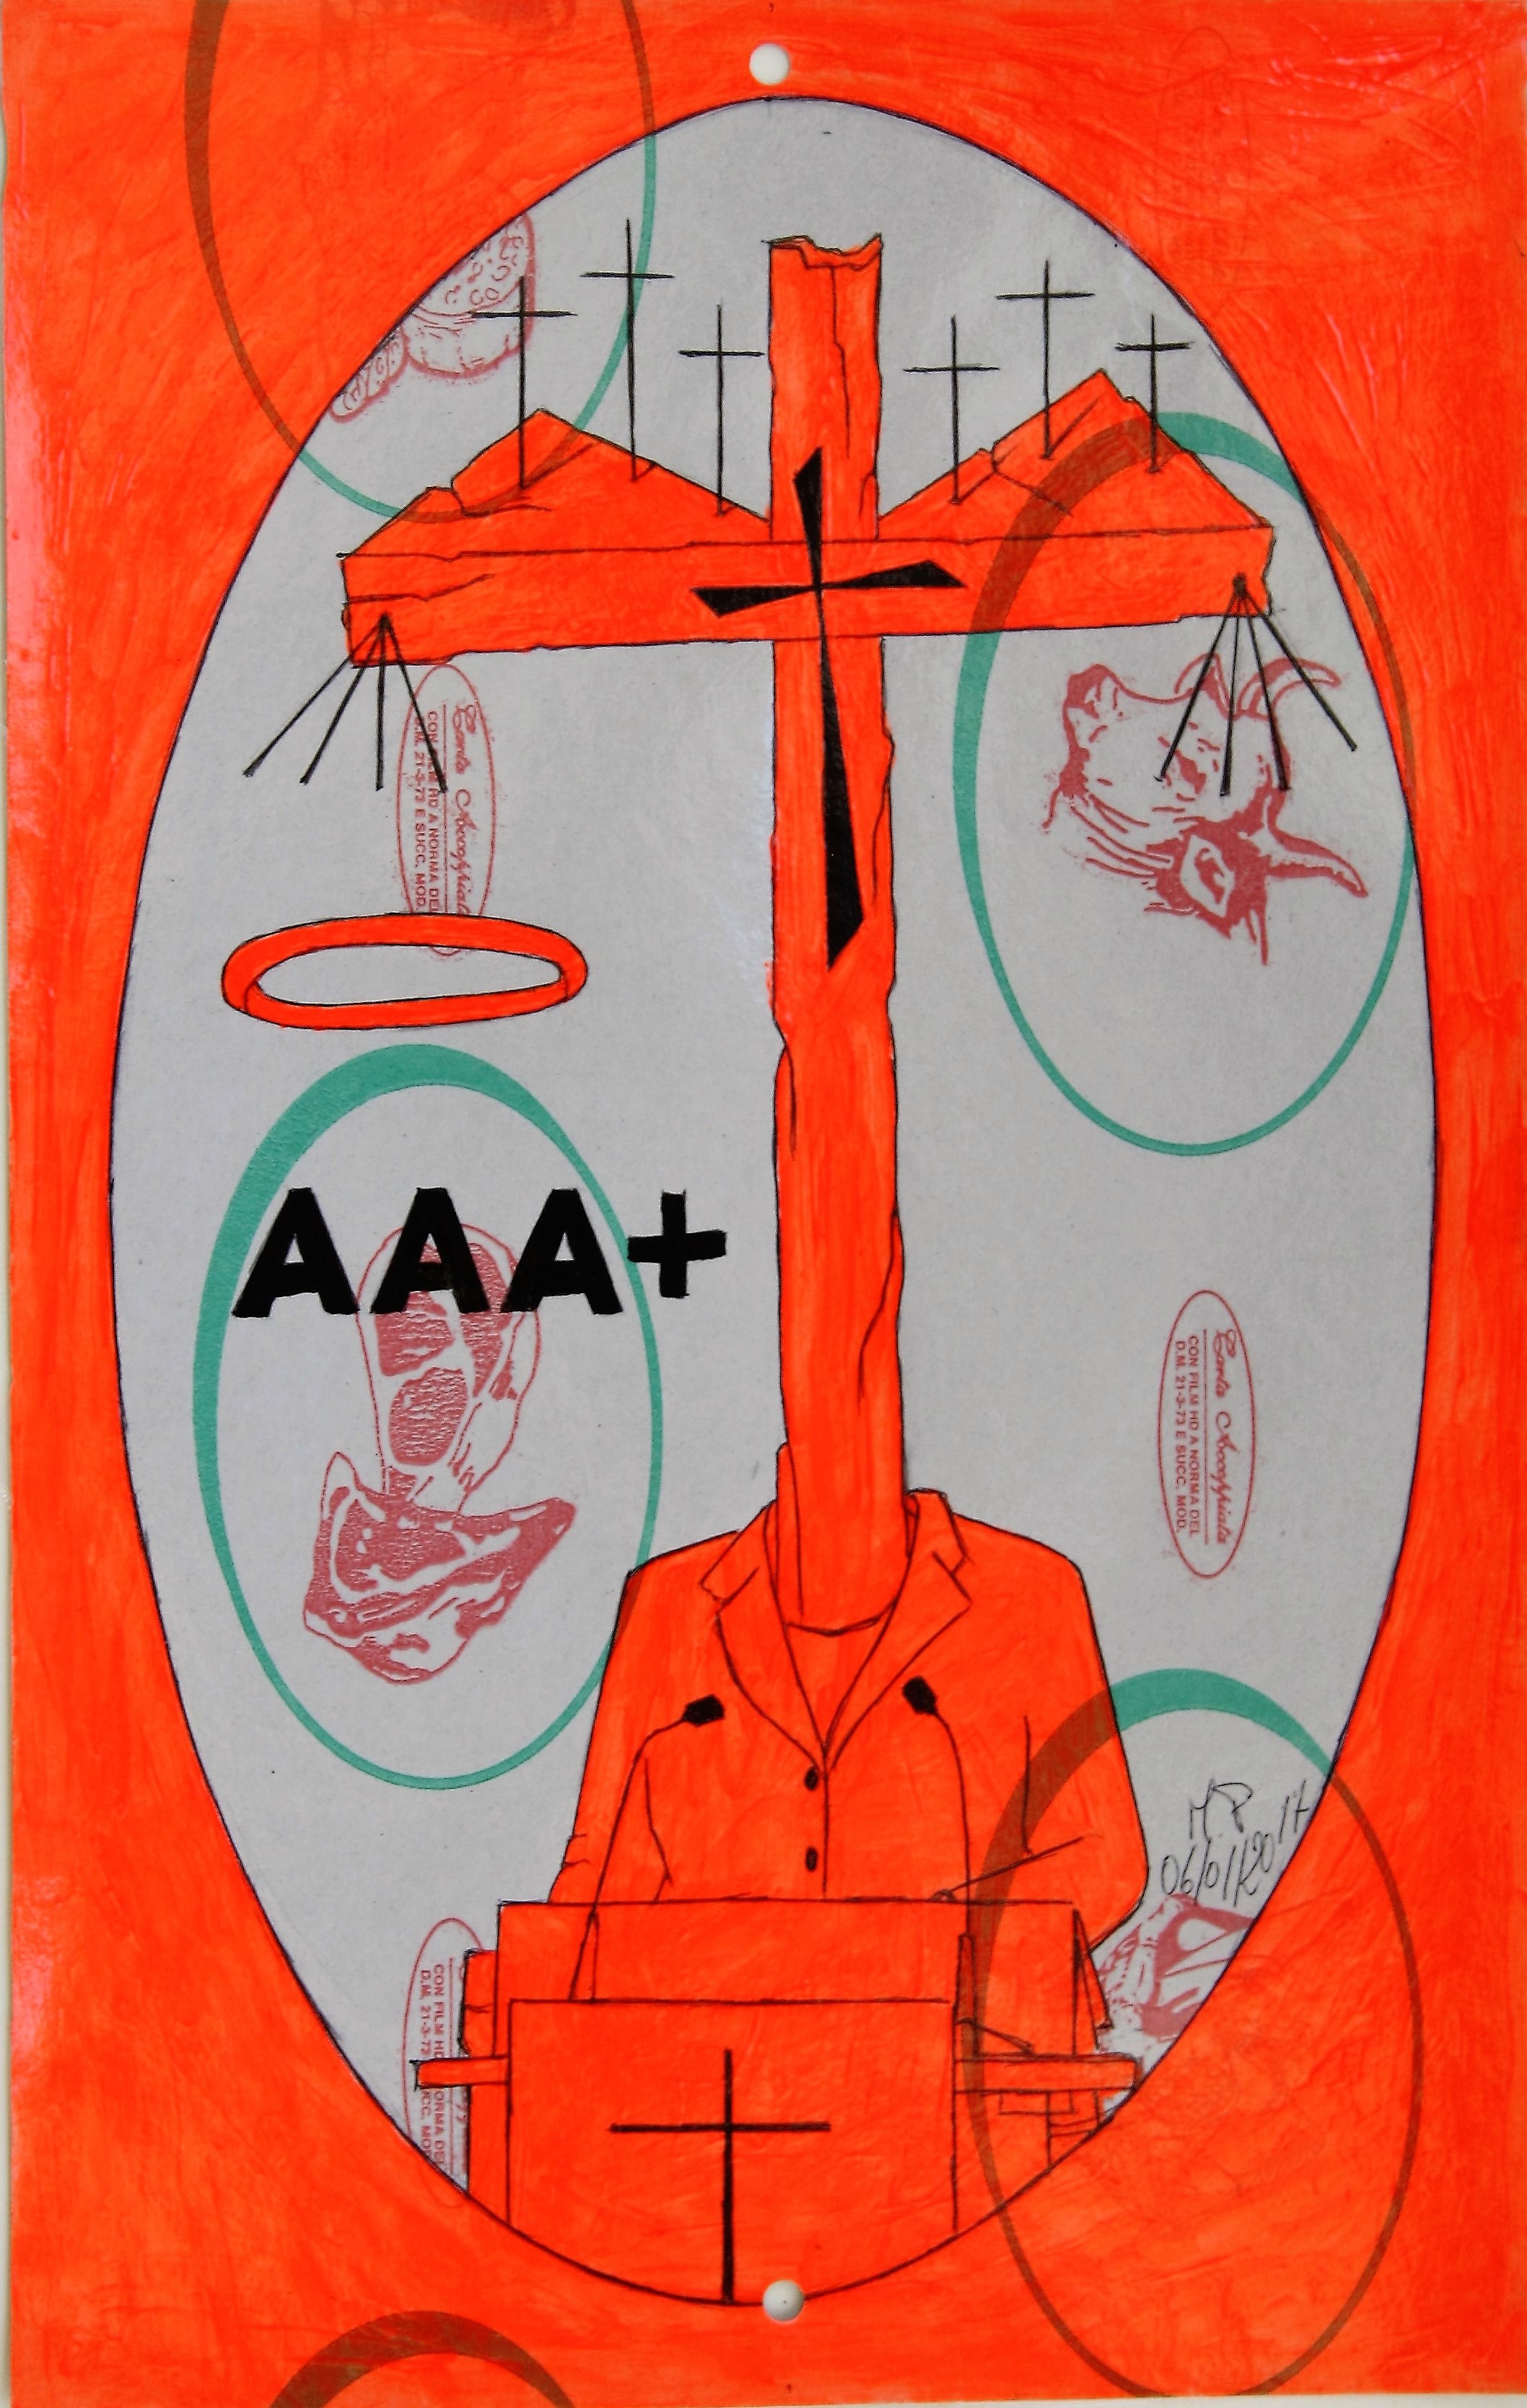 Disegno eseguito con penna nera e rosso fluorescente su carta politenata (carta per alimenti usata in macelleria) successivamente plastificata. Biennale del libro d'artista 2017, Napoli. Pasquale Mastrogiacomo, Acerno (SA).